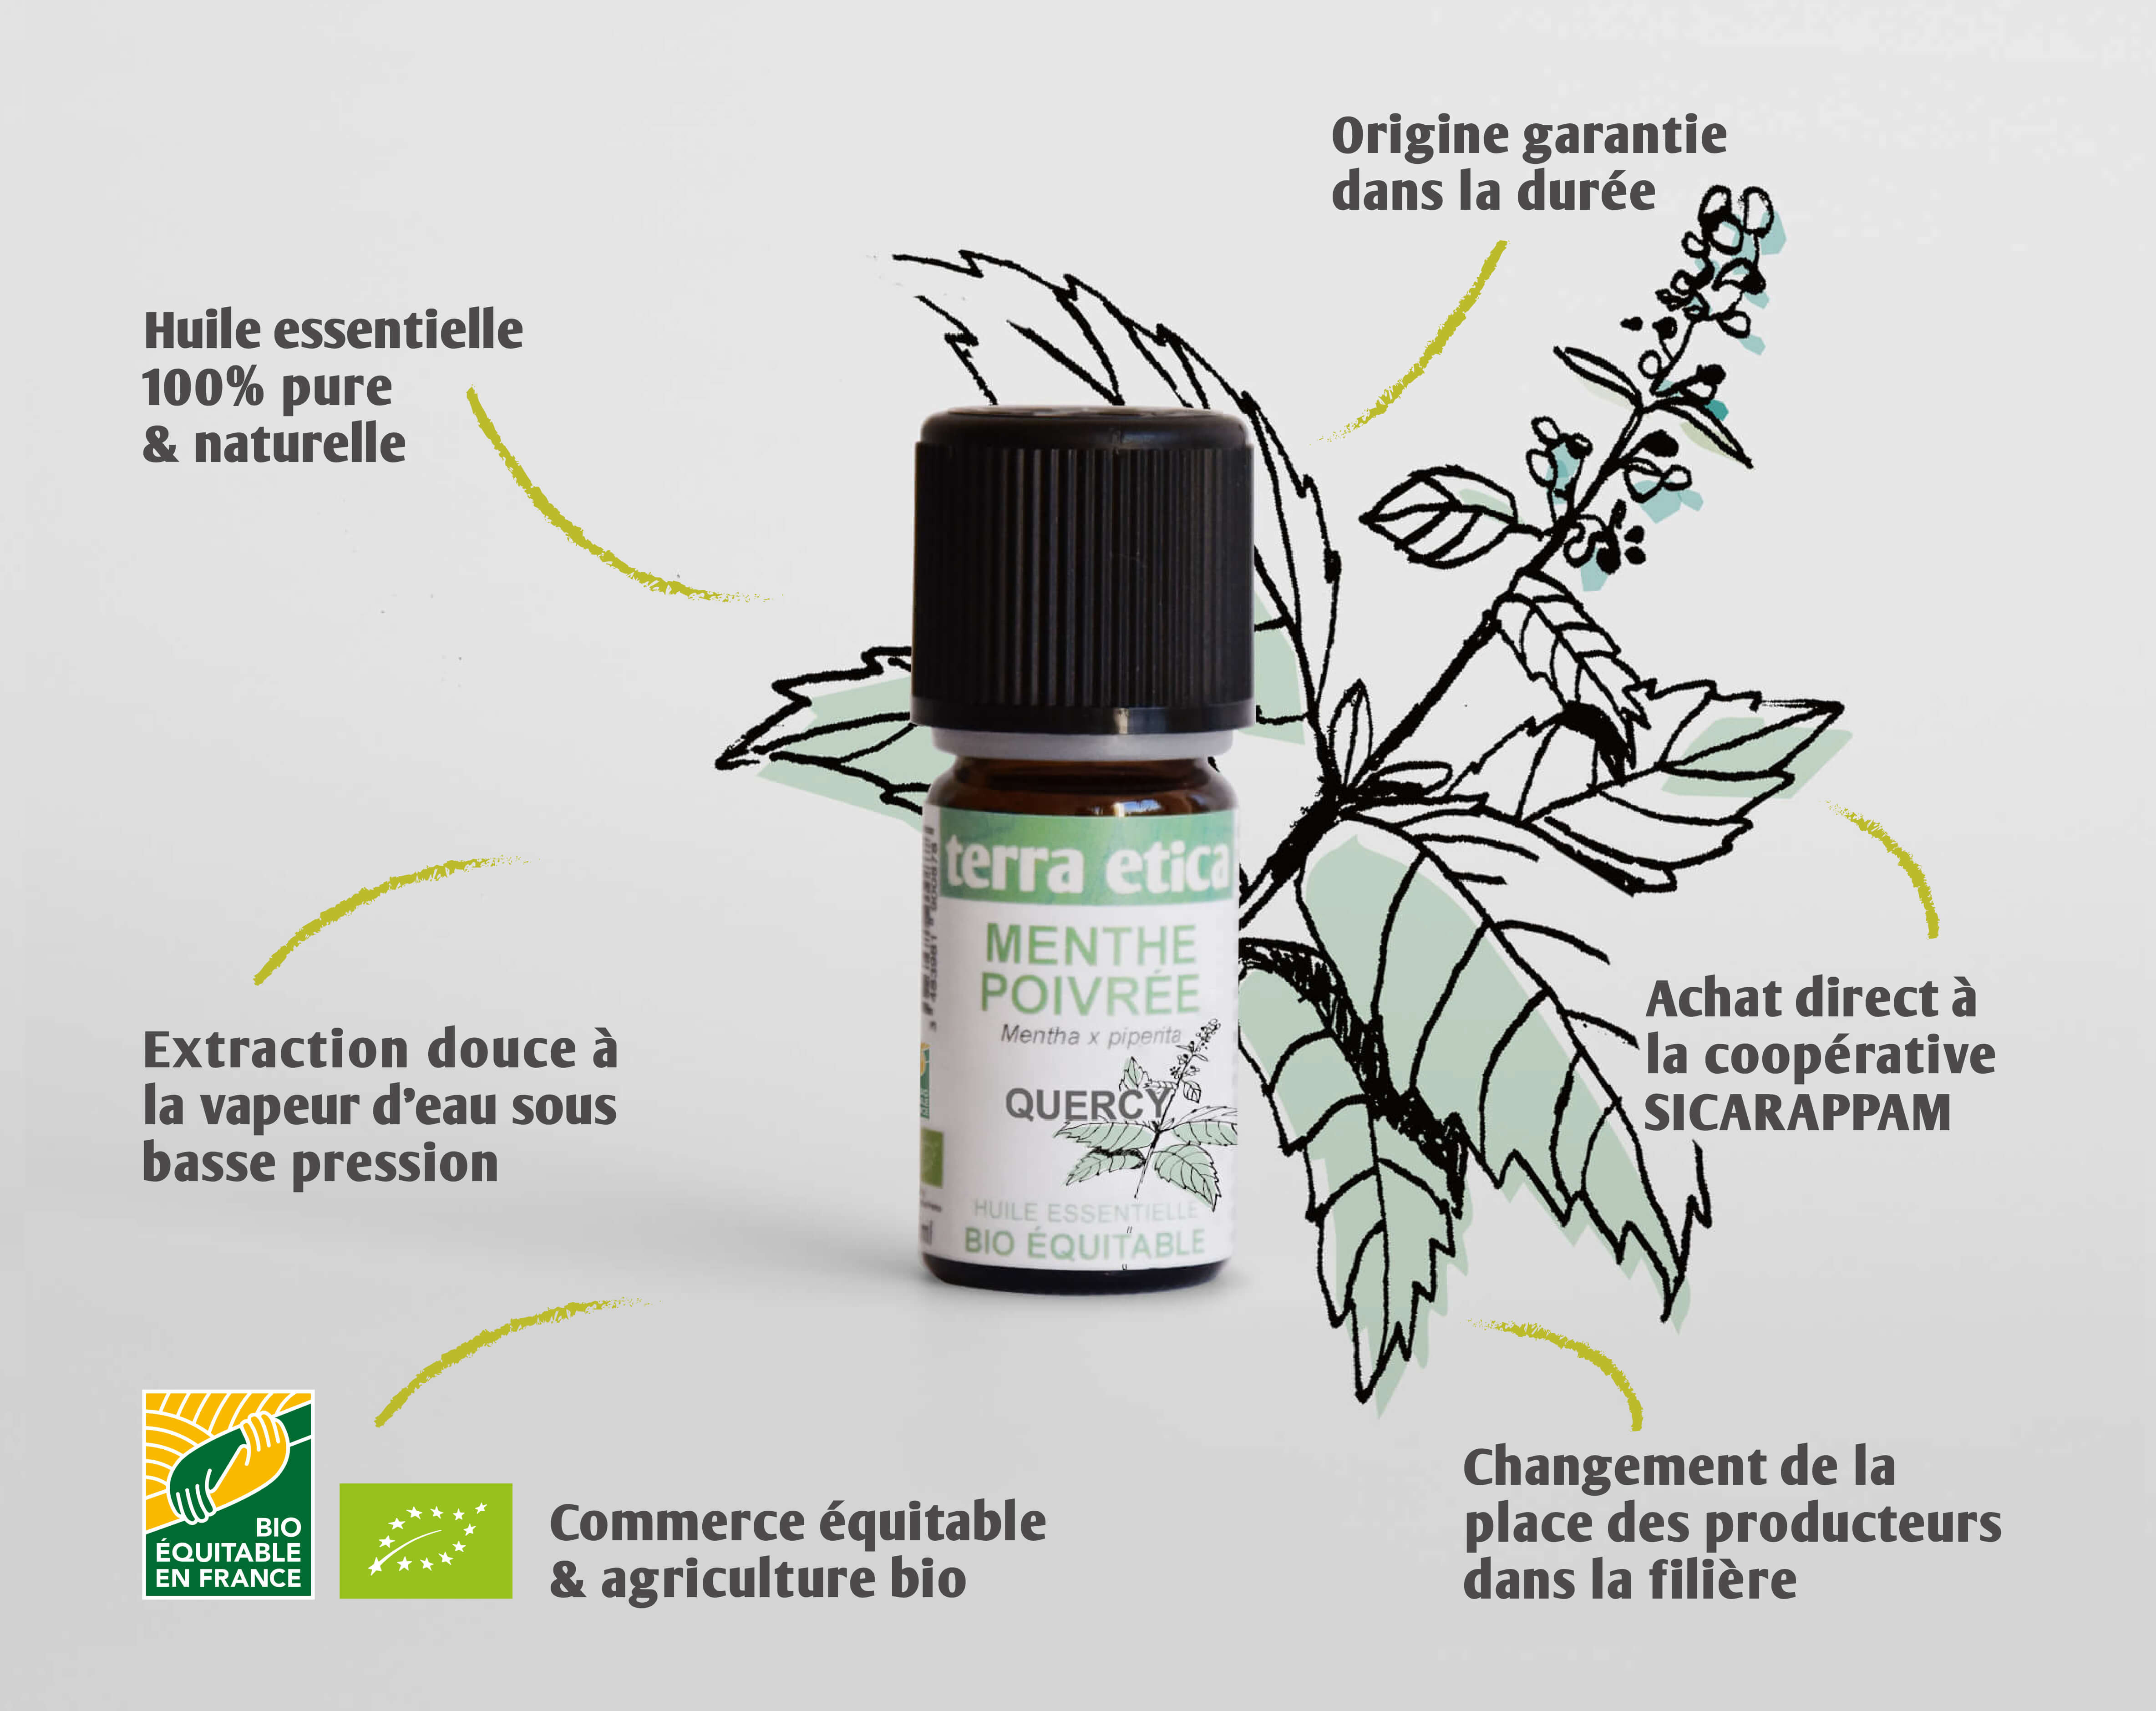 Terra Etica - Pure huile essentielle de Menthe poivrée France biologique et équitable